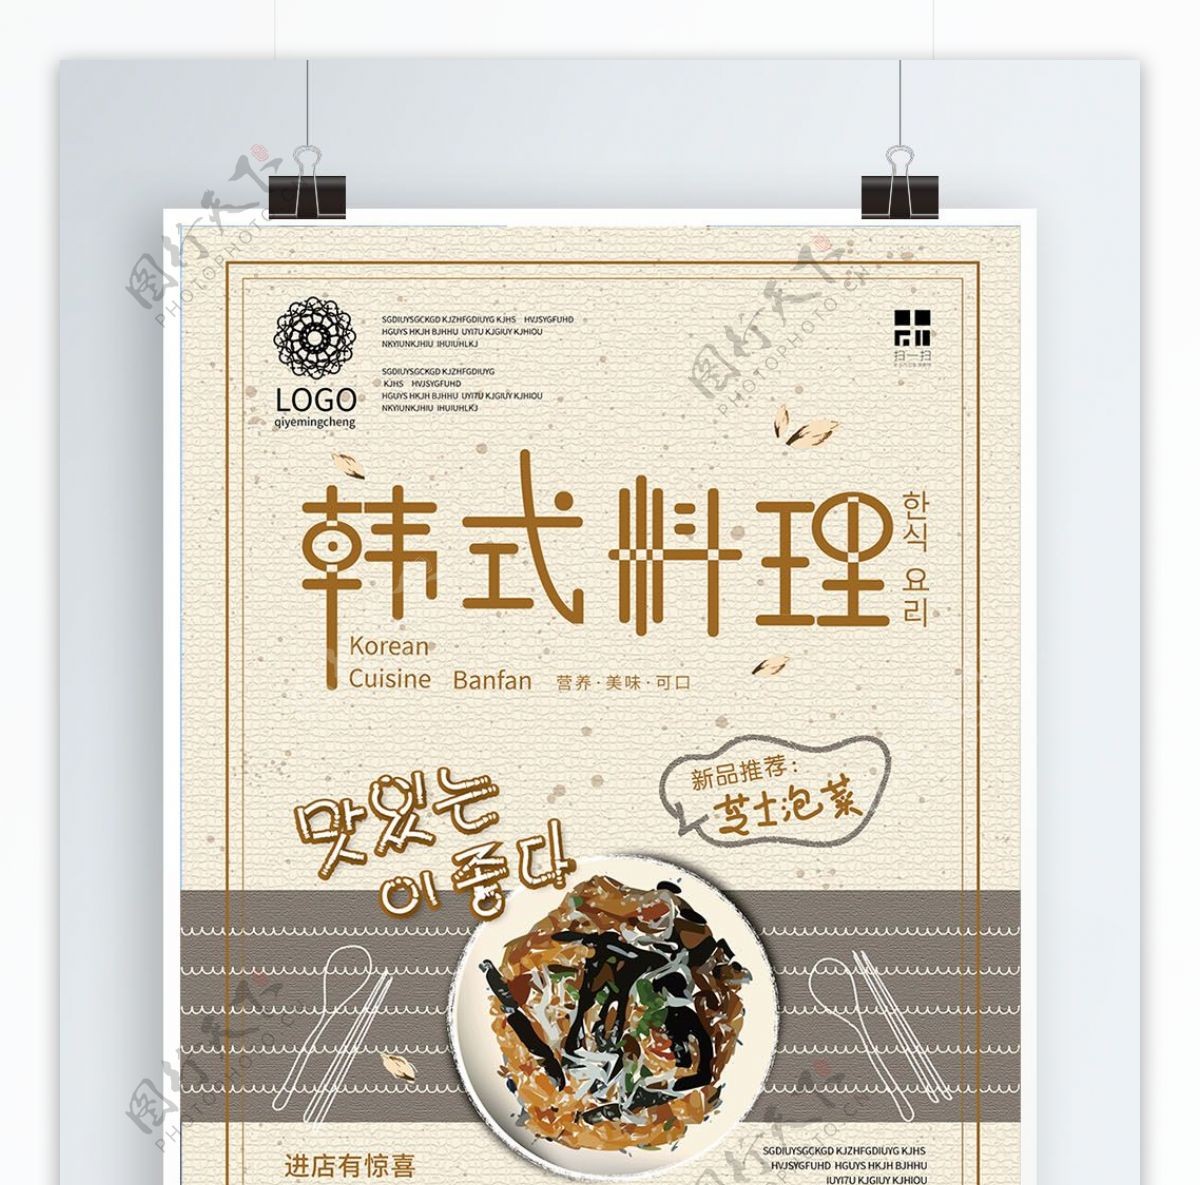 原创简约复古手绘矢量韩式料理美食海报